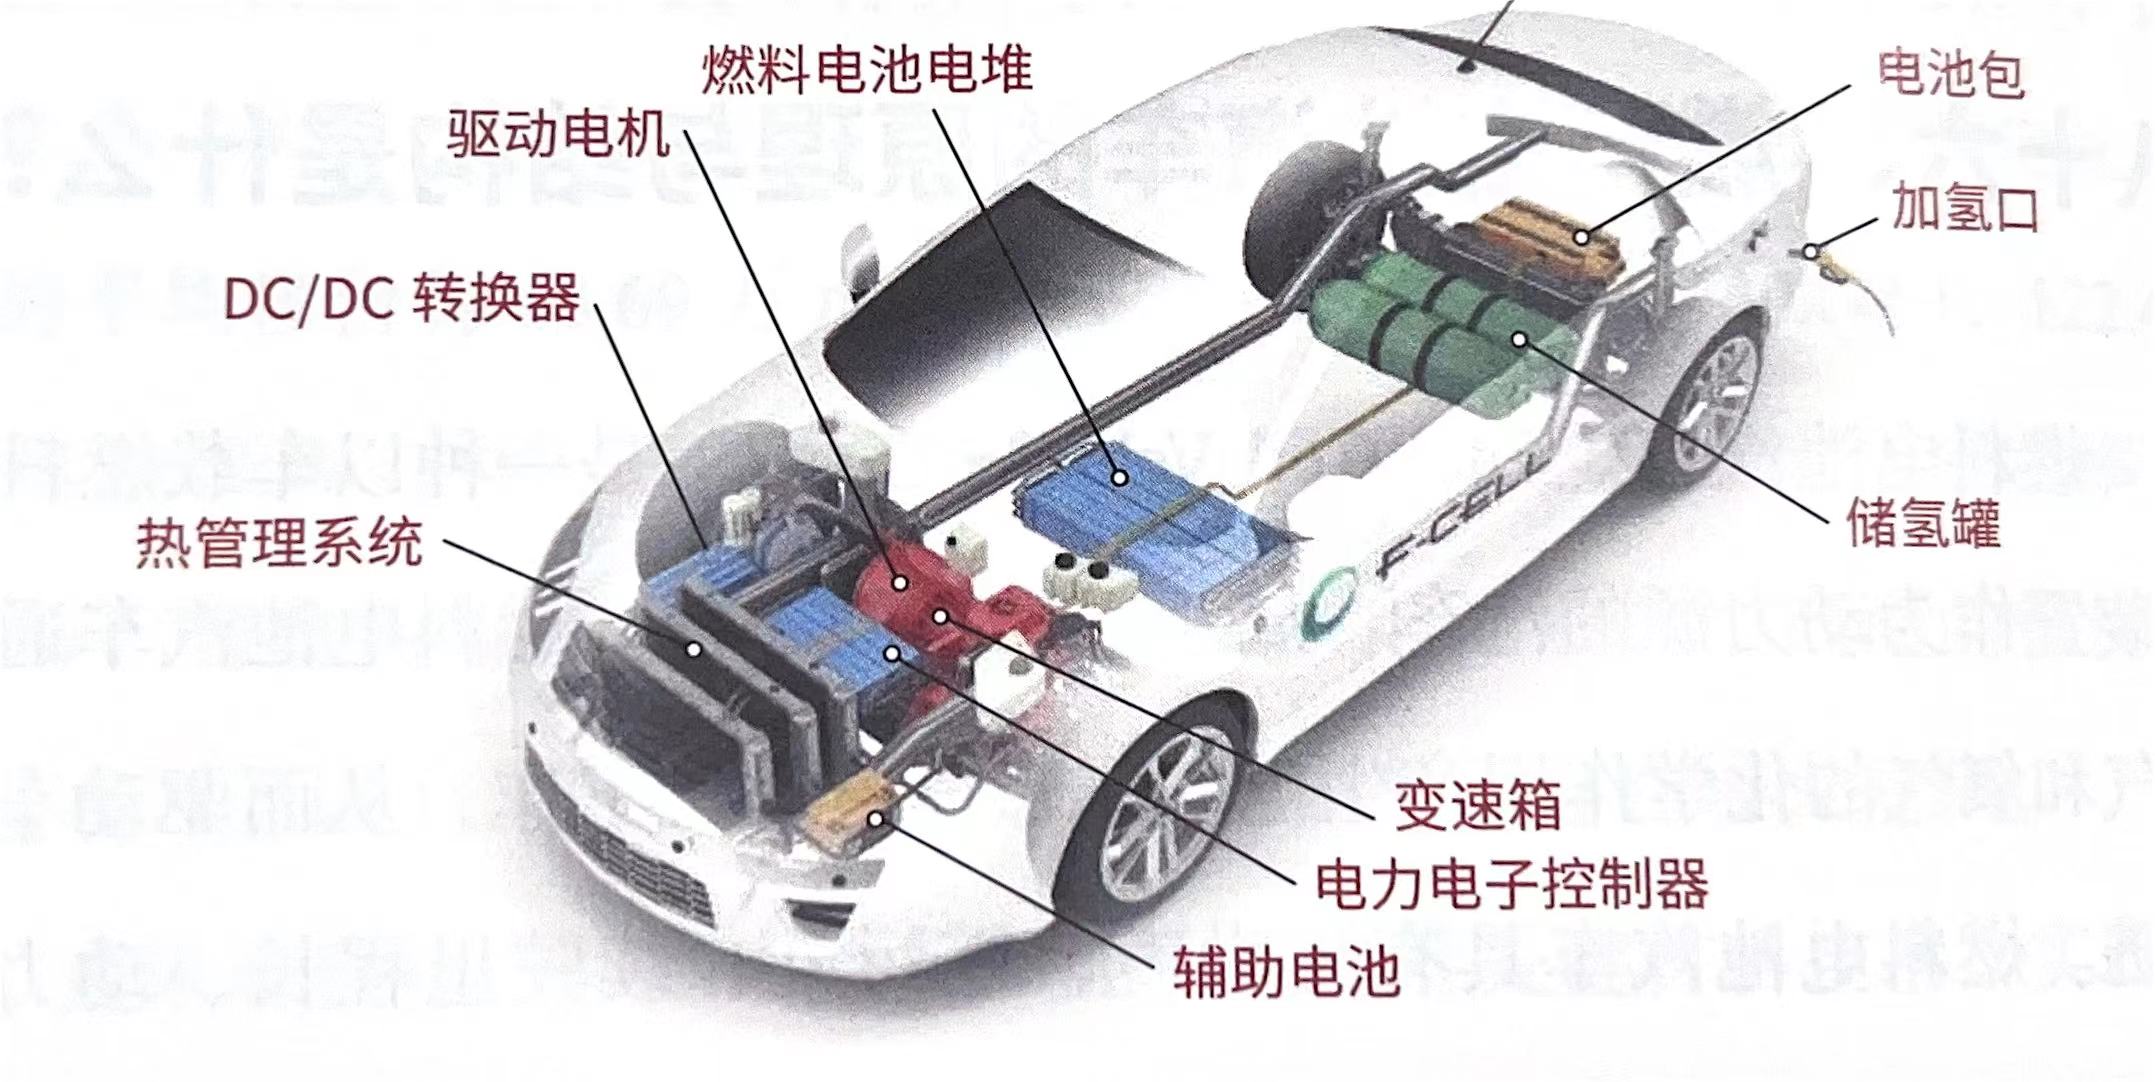 燃料电池车基本结构示意图.jpg